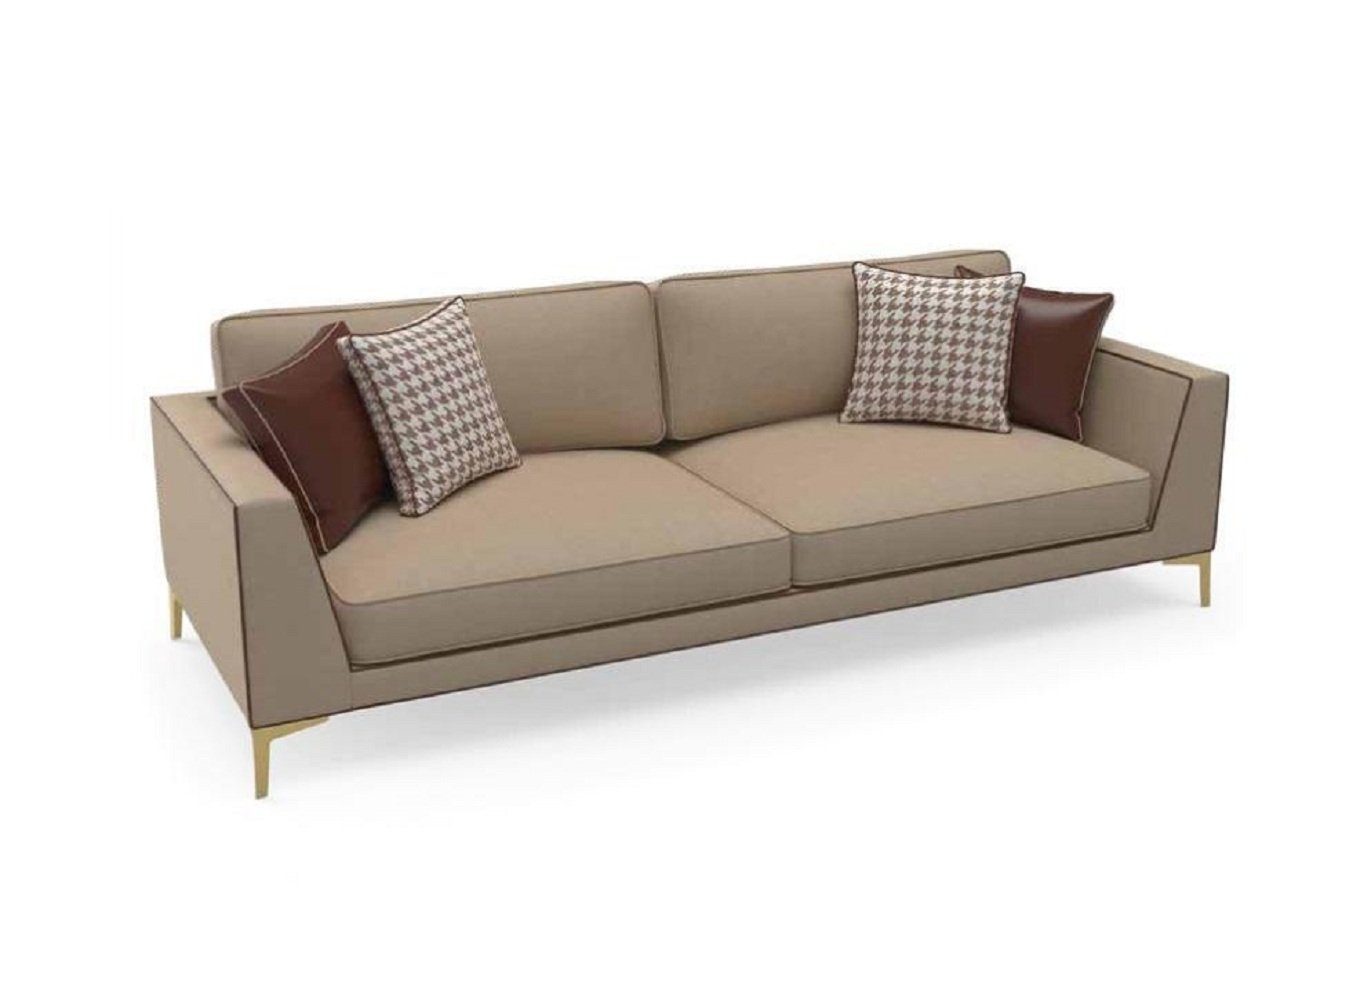 JVmoebel 3-Sitzer Design Sofa Couch Polster 3 Sitzer Sofas Couchen Sitz Garnitur Stoff, 1 Teile, Made in Europa